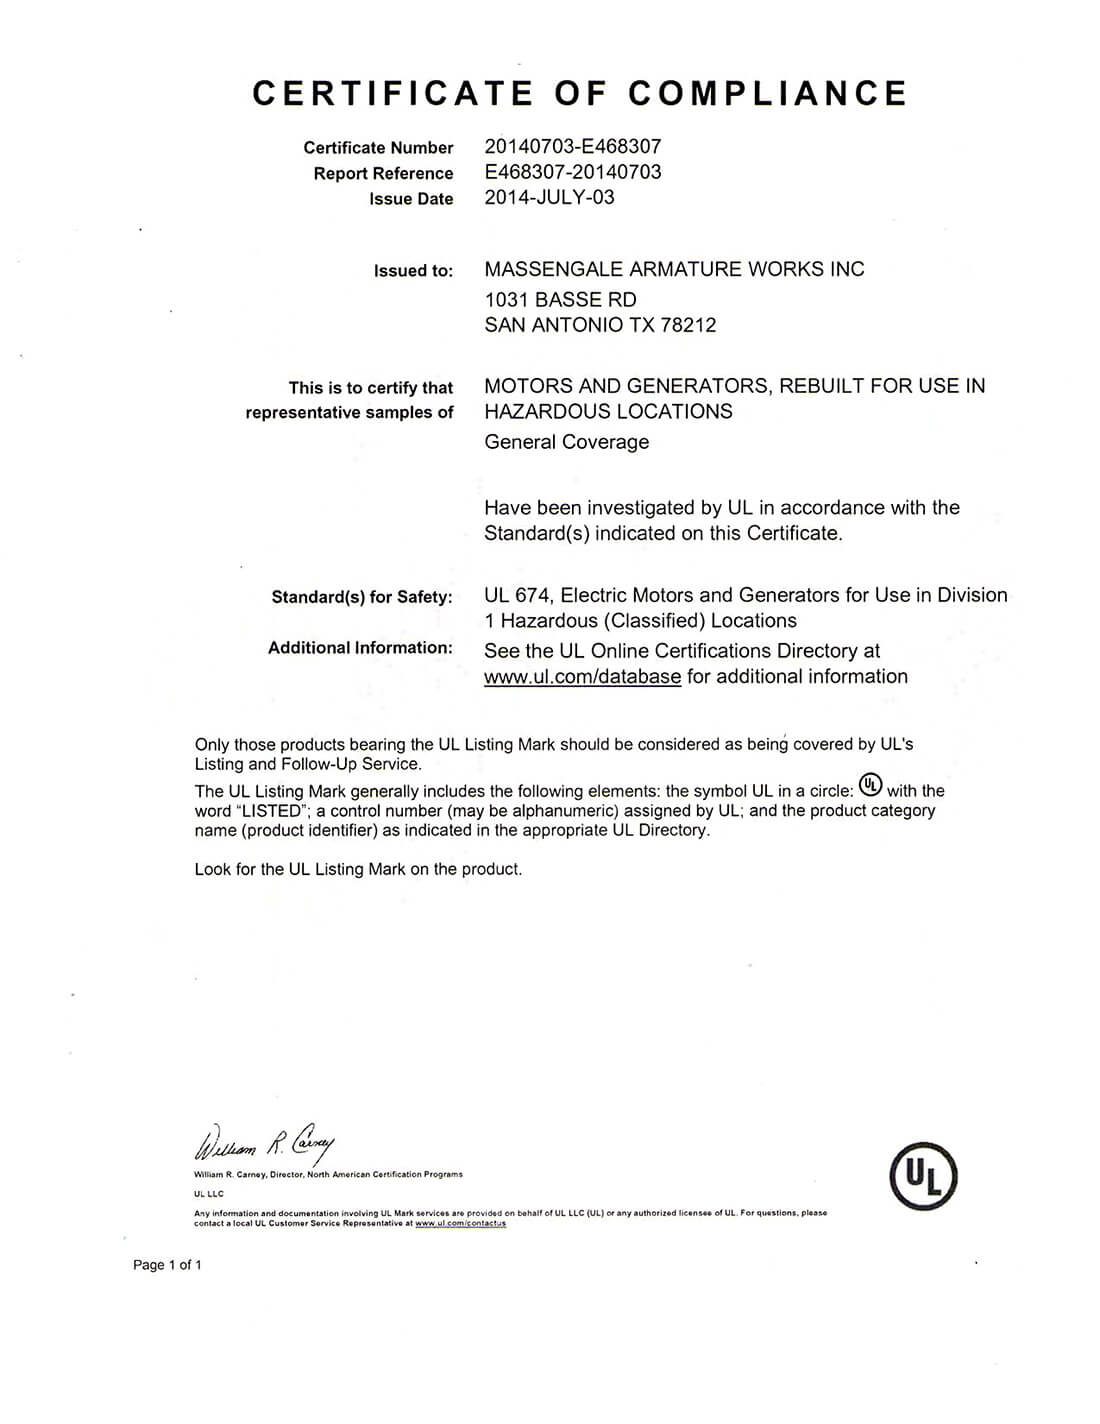 UL Certificate of compliance